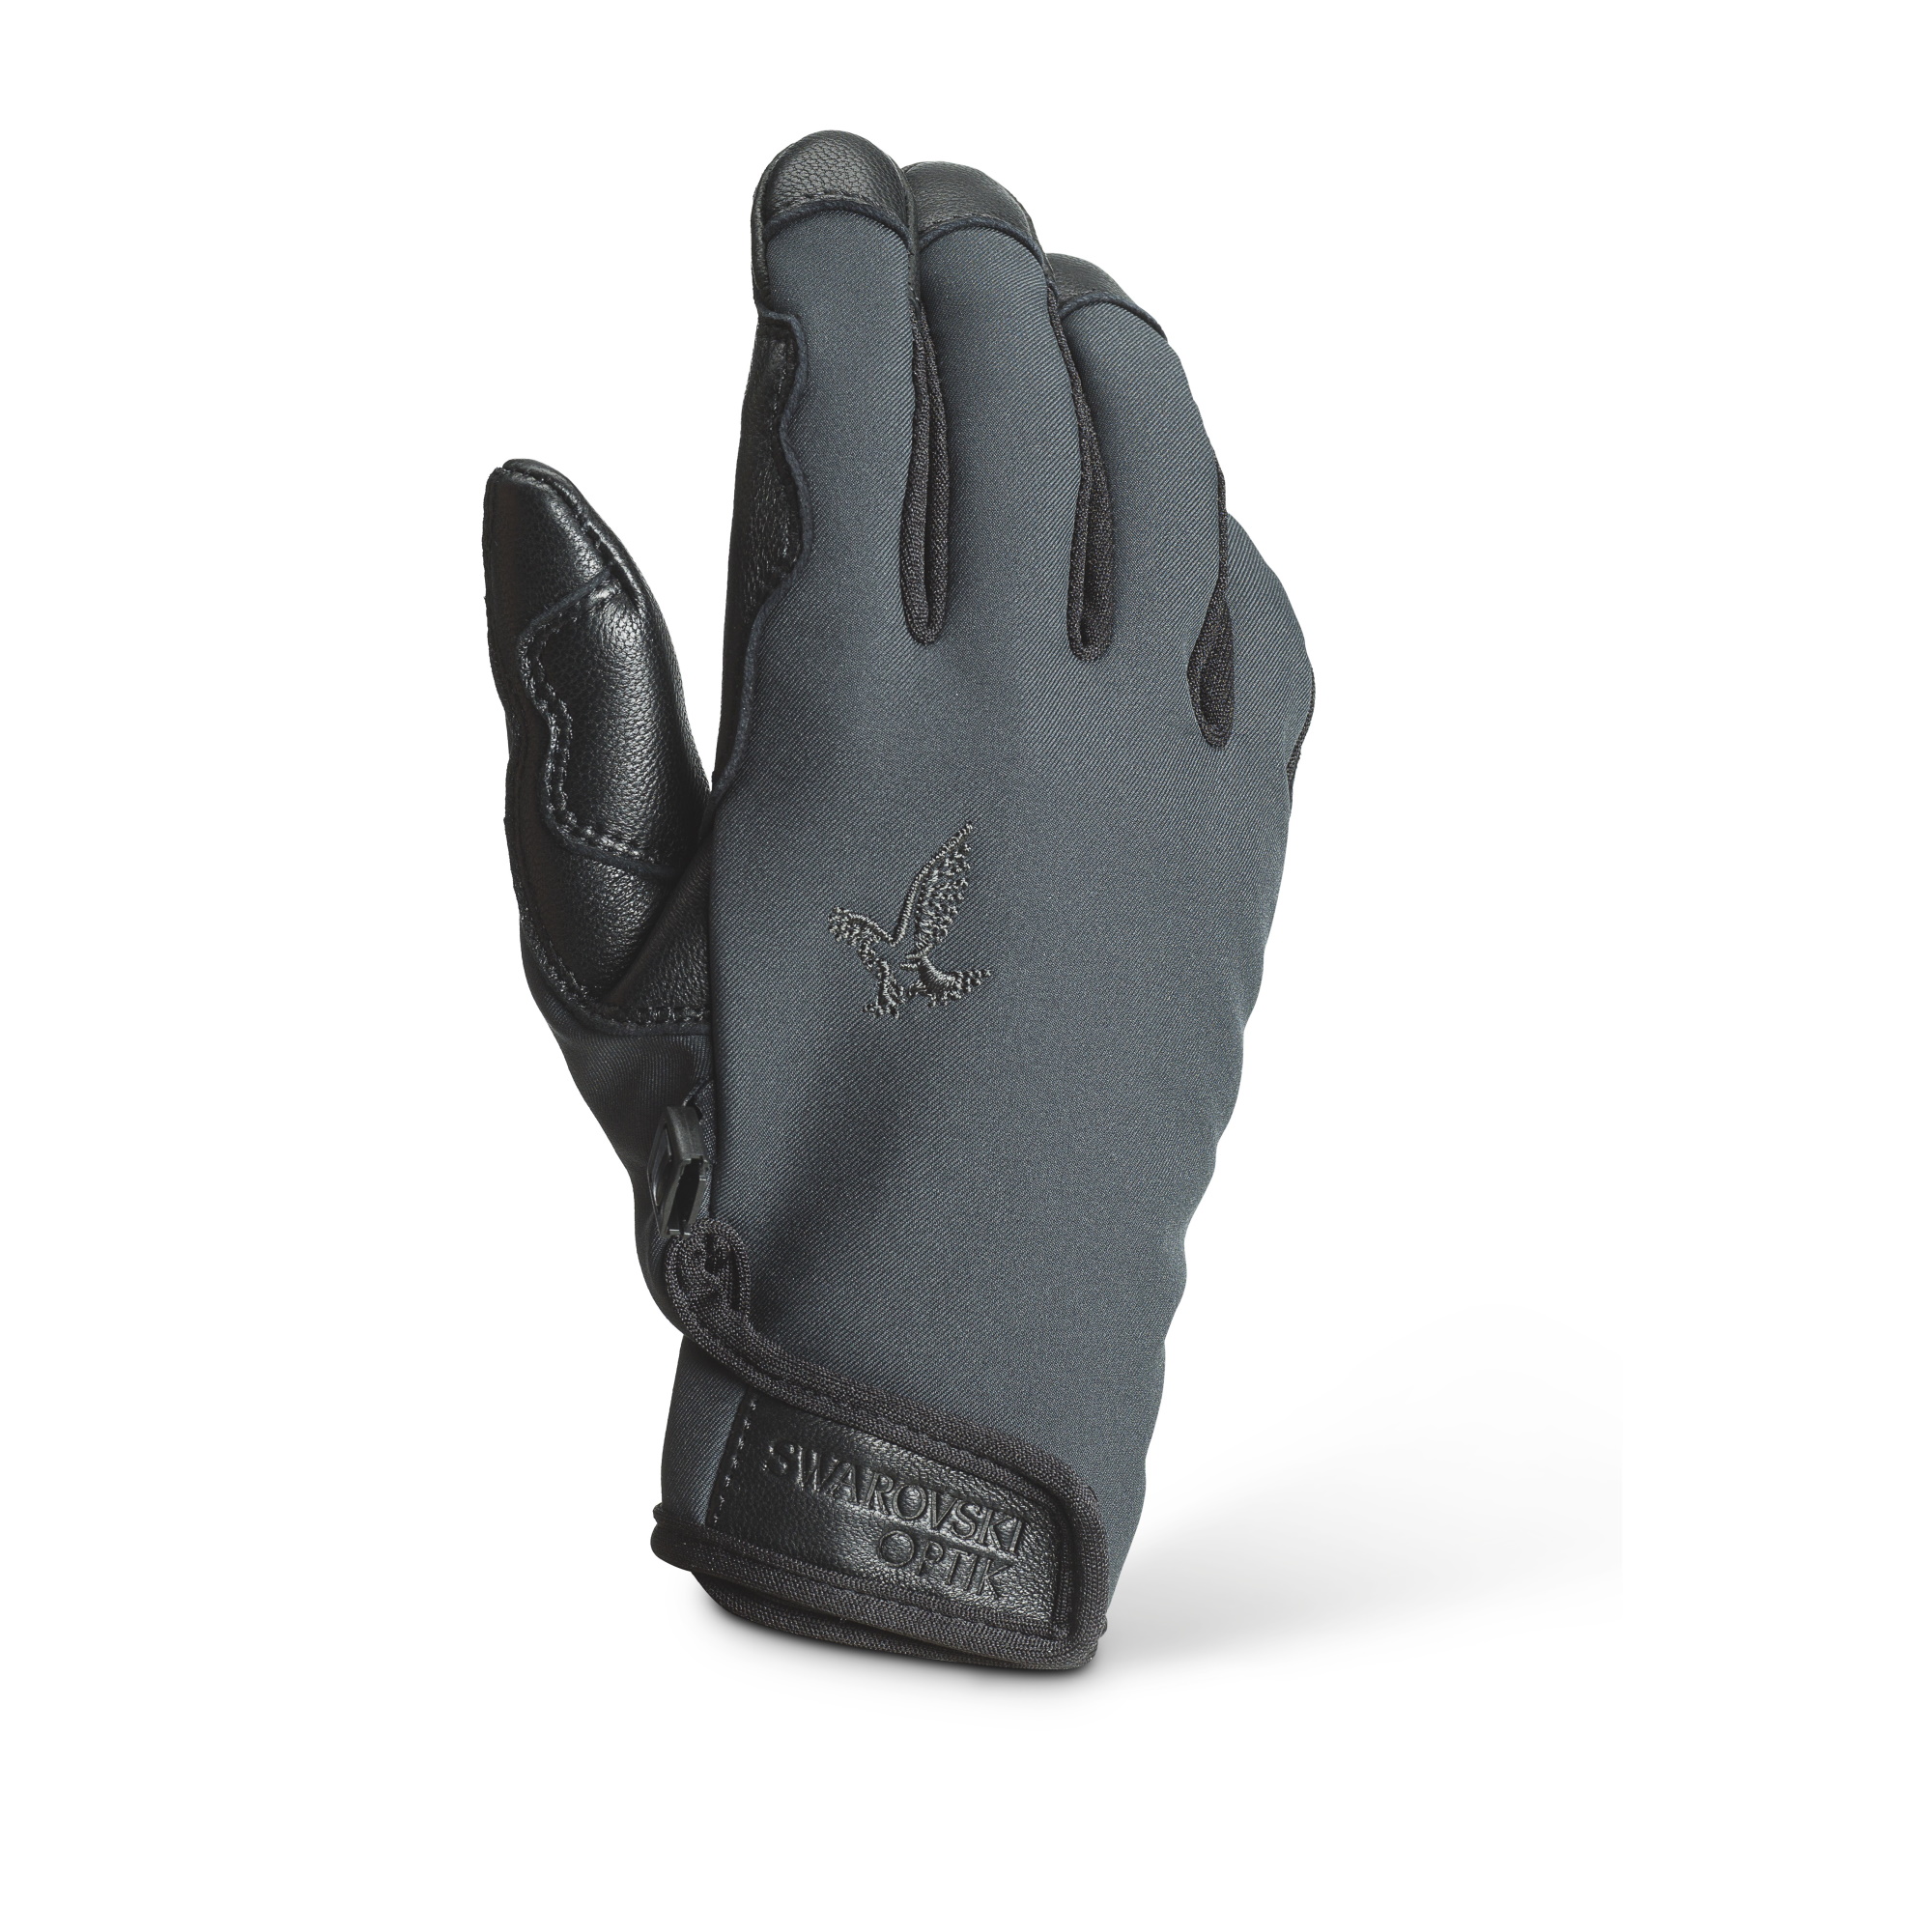 Swarovski Gp Gloves Pro Grey